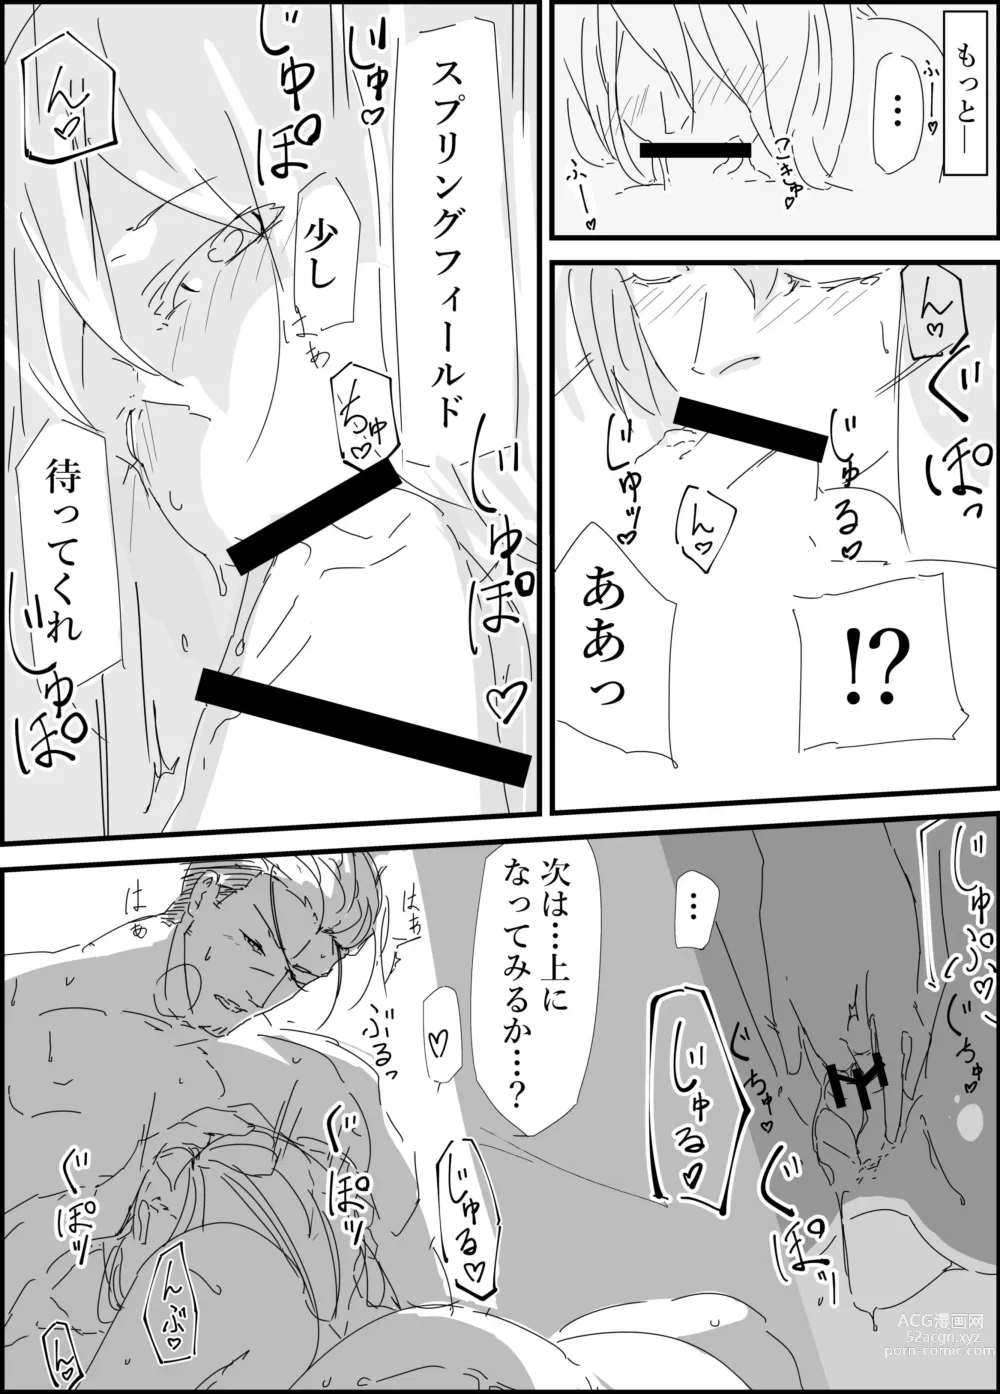 Page 7 of doujinshi Haruta san to.